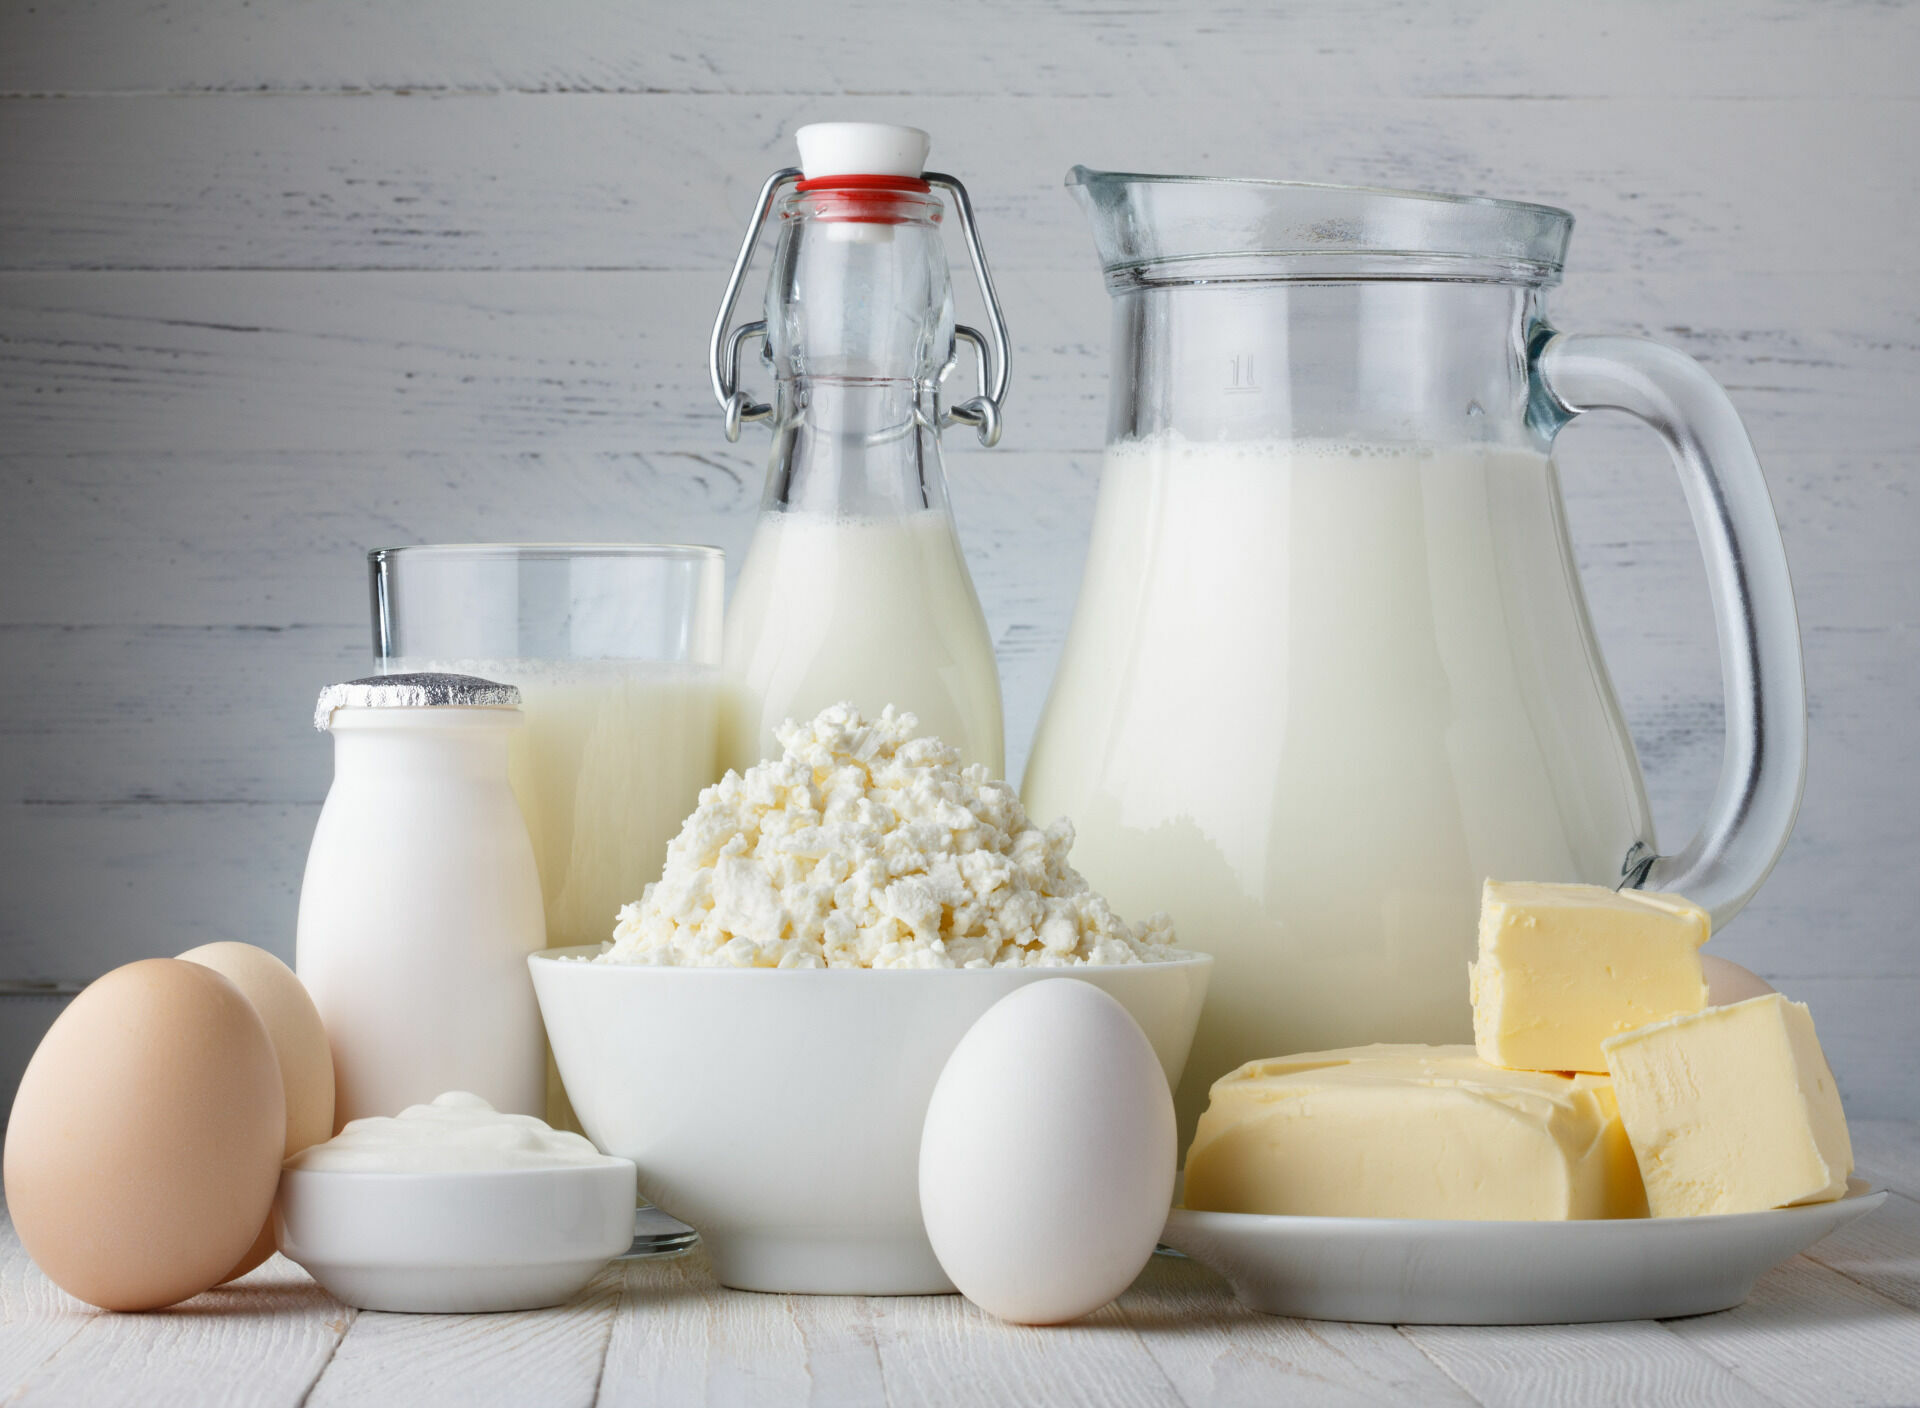 Производители готовы повысить цены на молоко в связи с ослаблением рубля